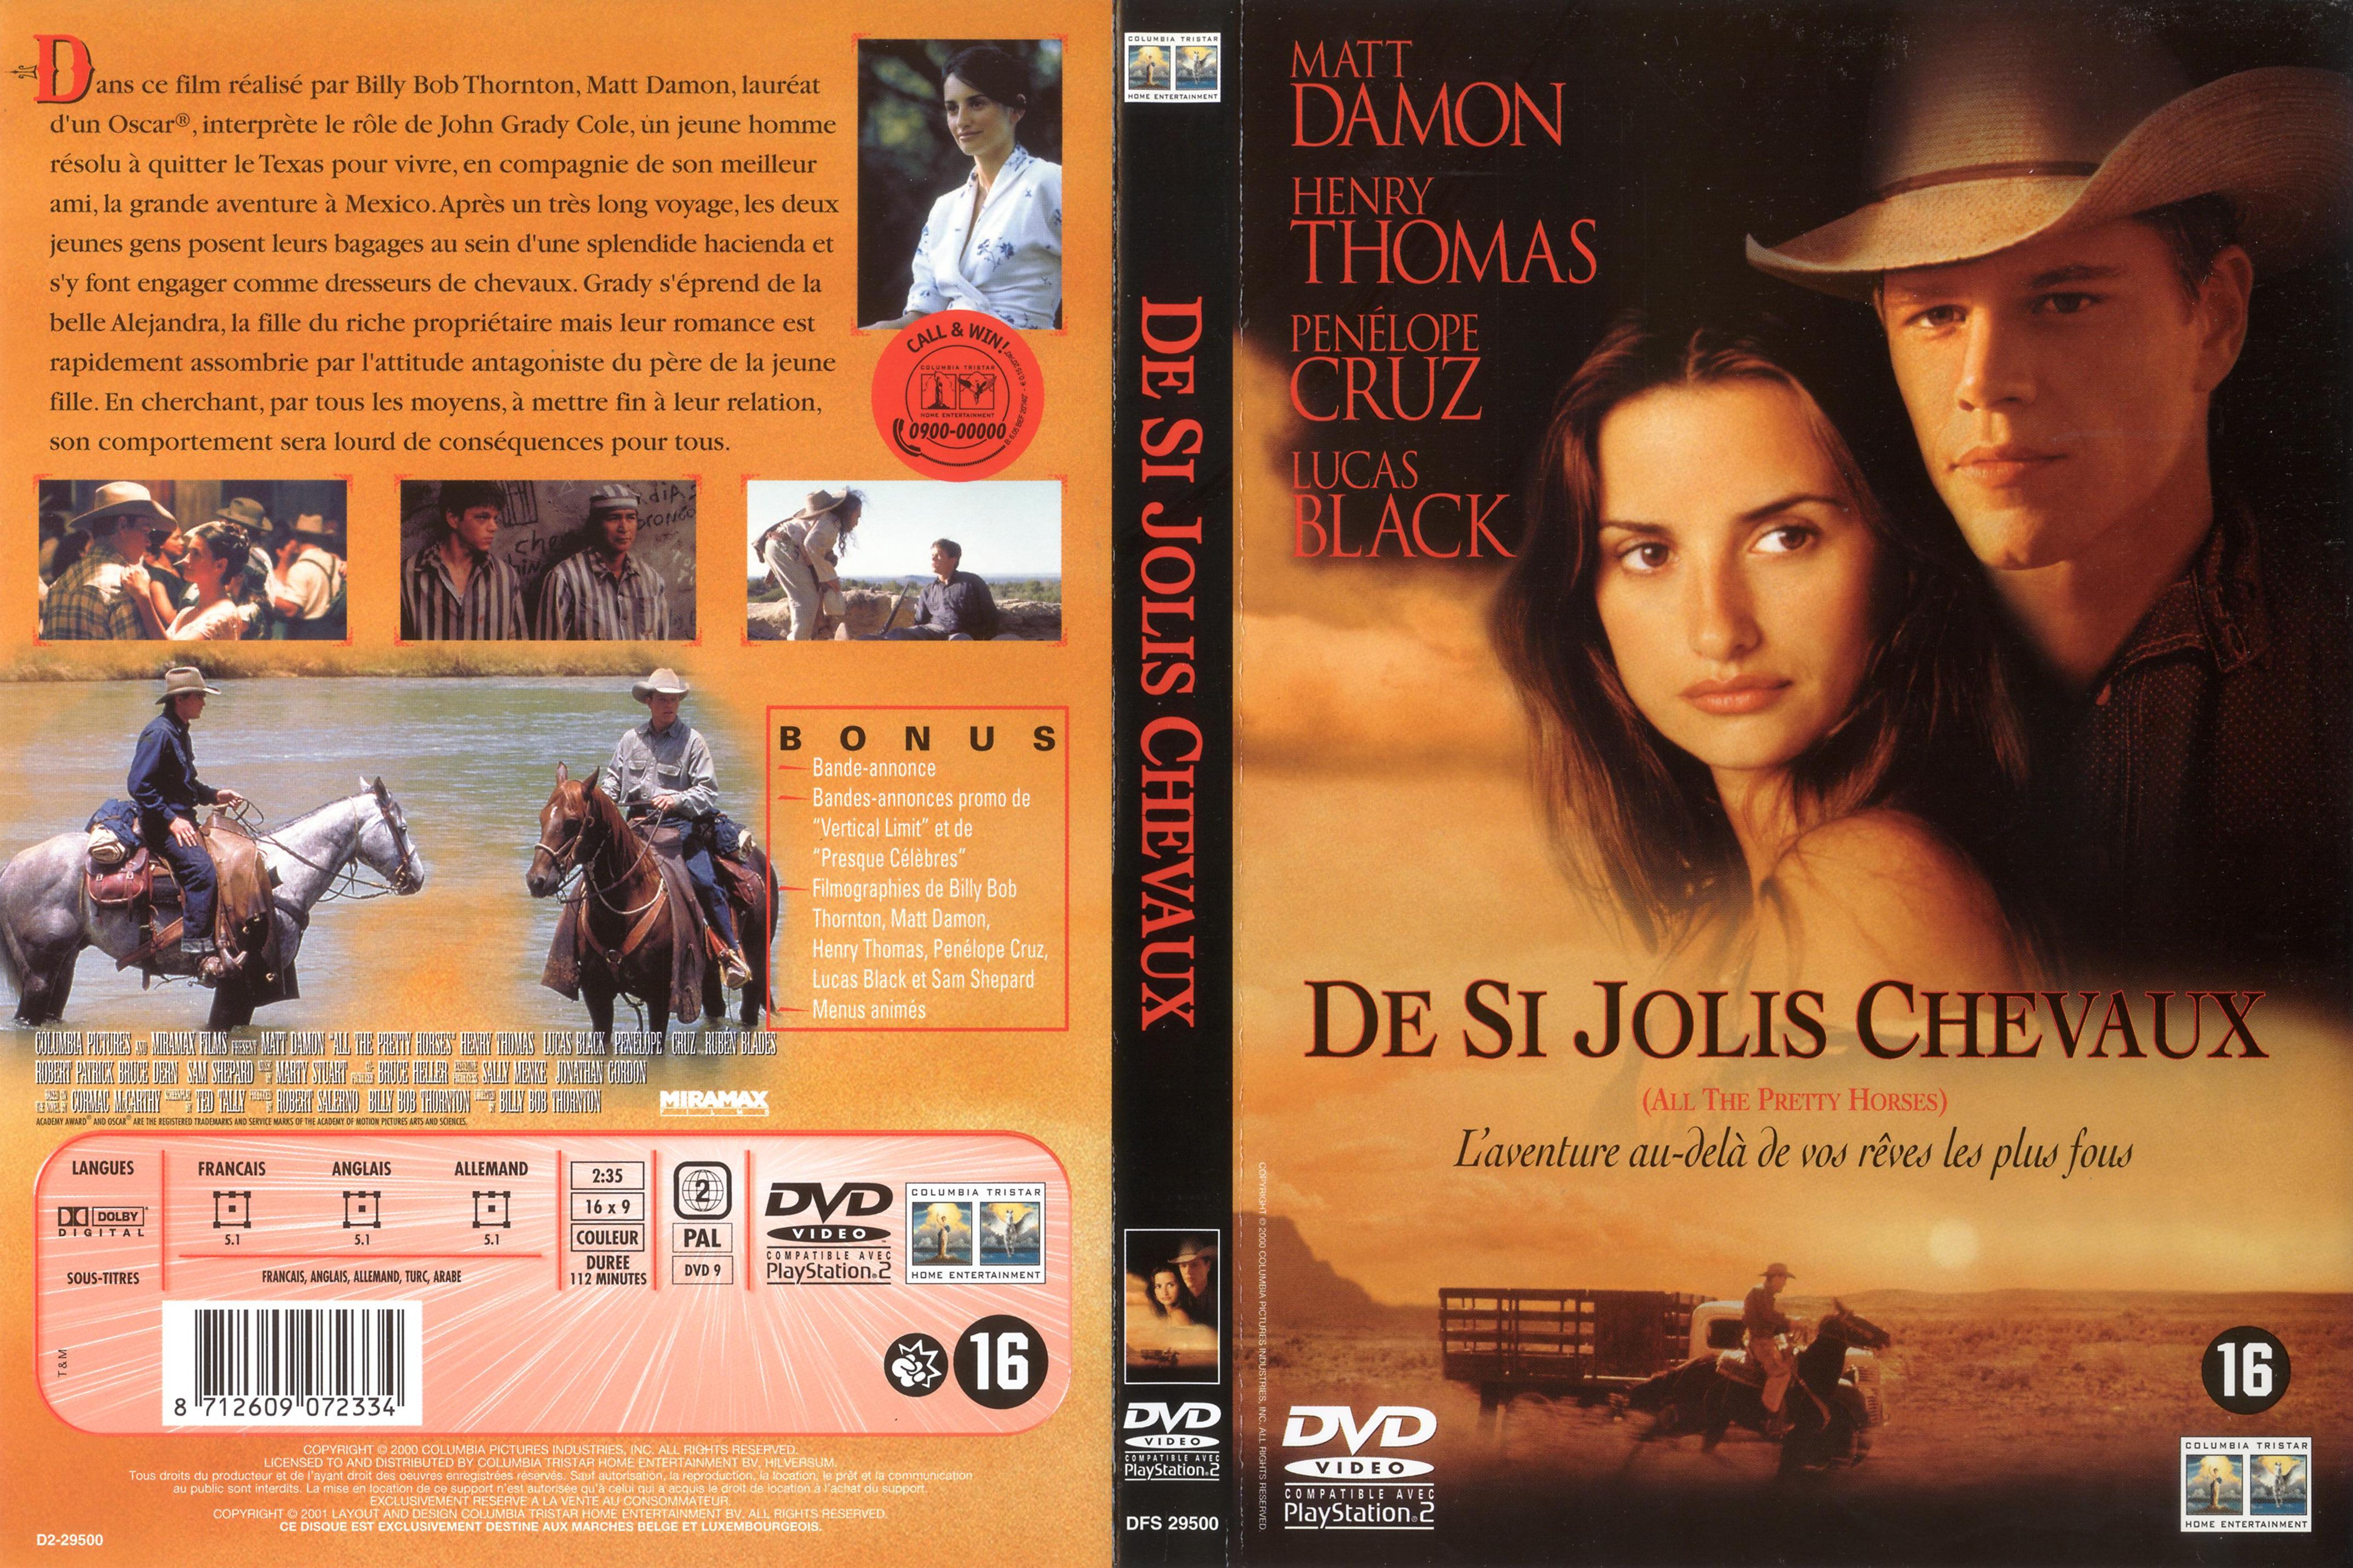 Jaquette DVD De si jolis chevaux v2